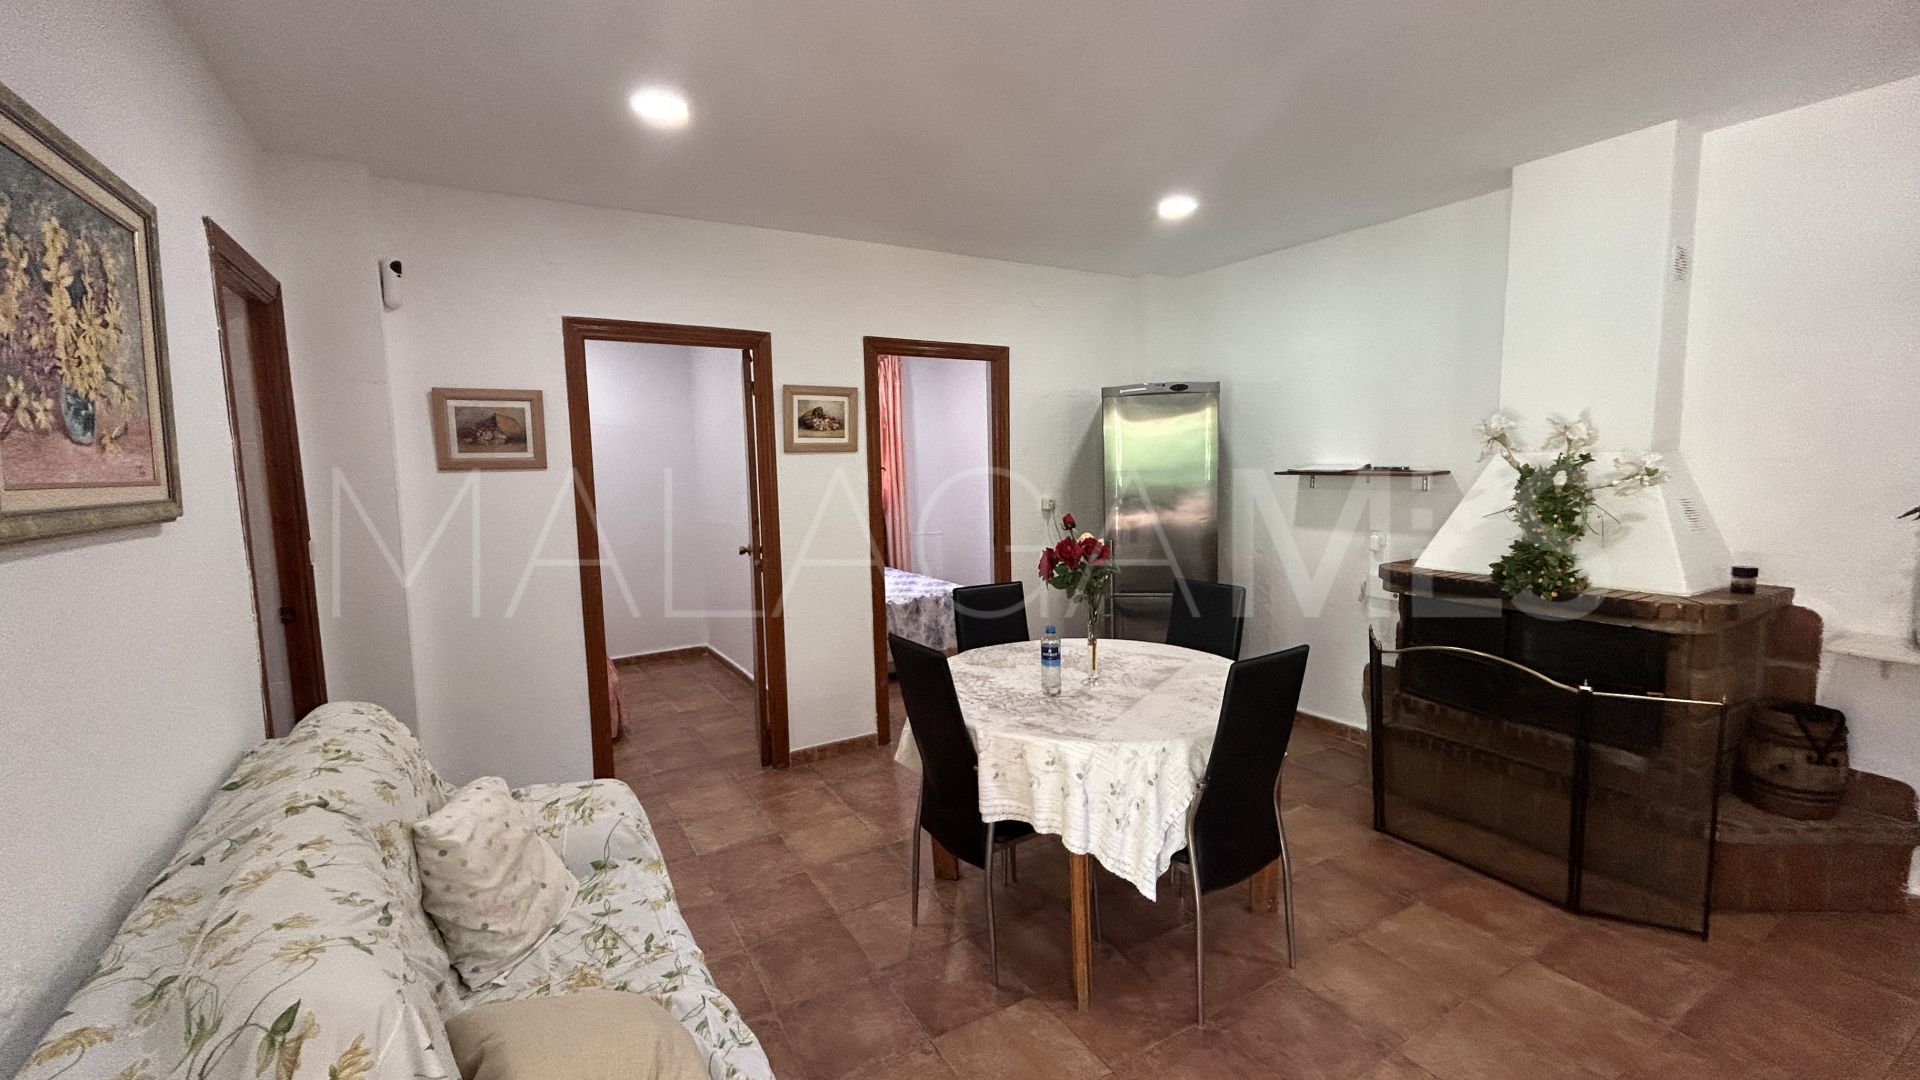 Los Reales - Sierra Estepona 2 bedrooms finca for sale